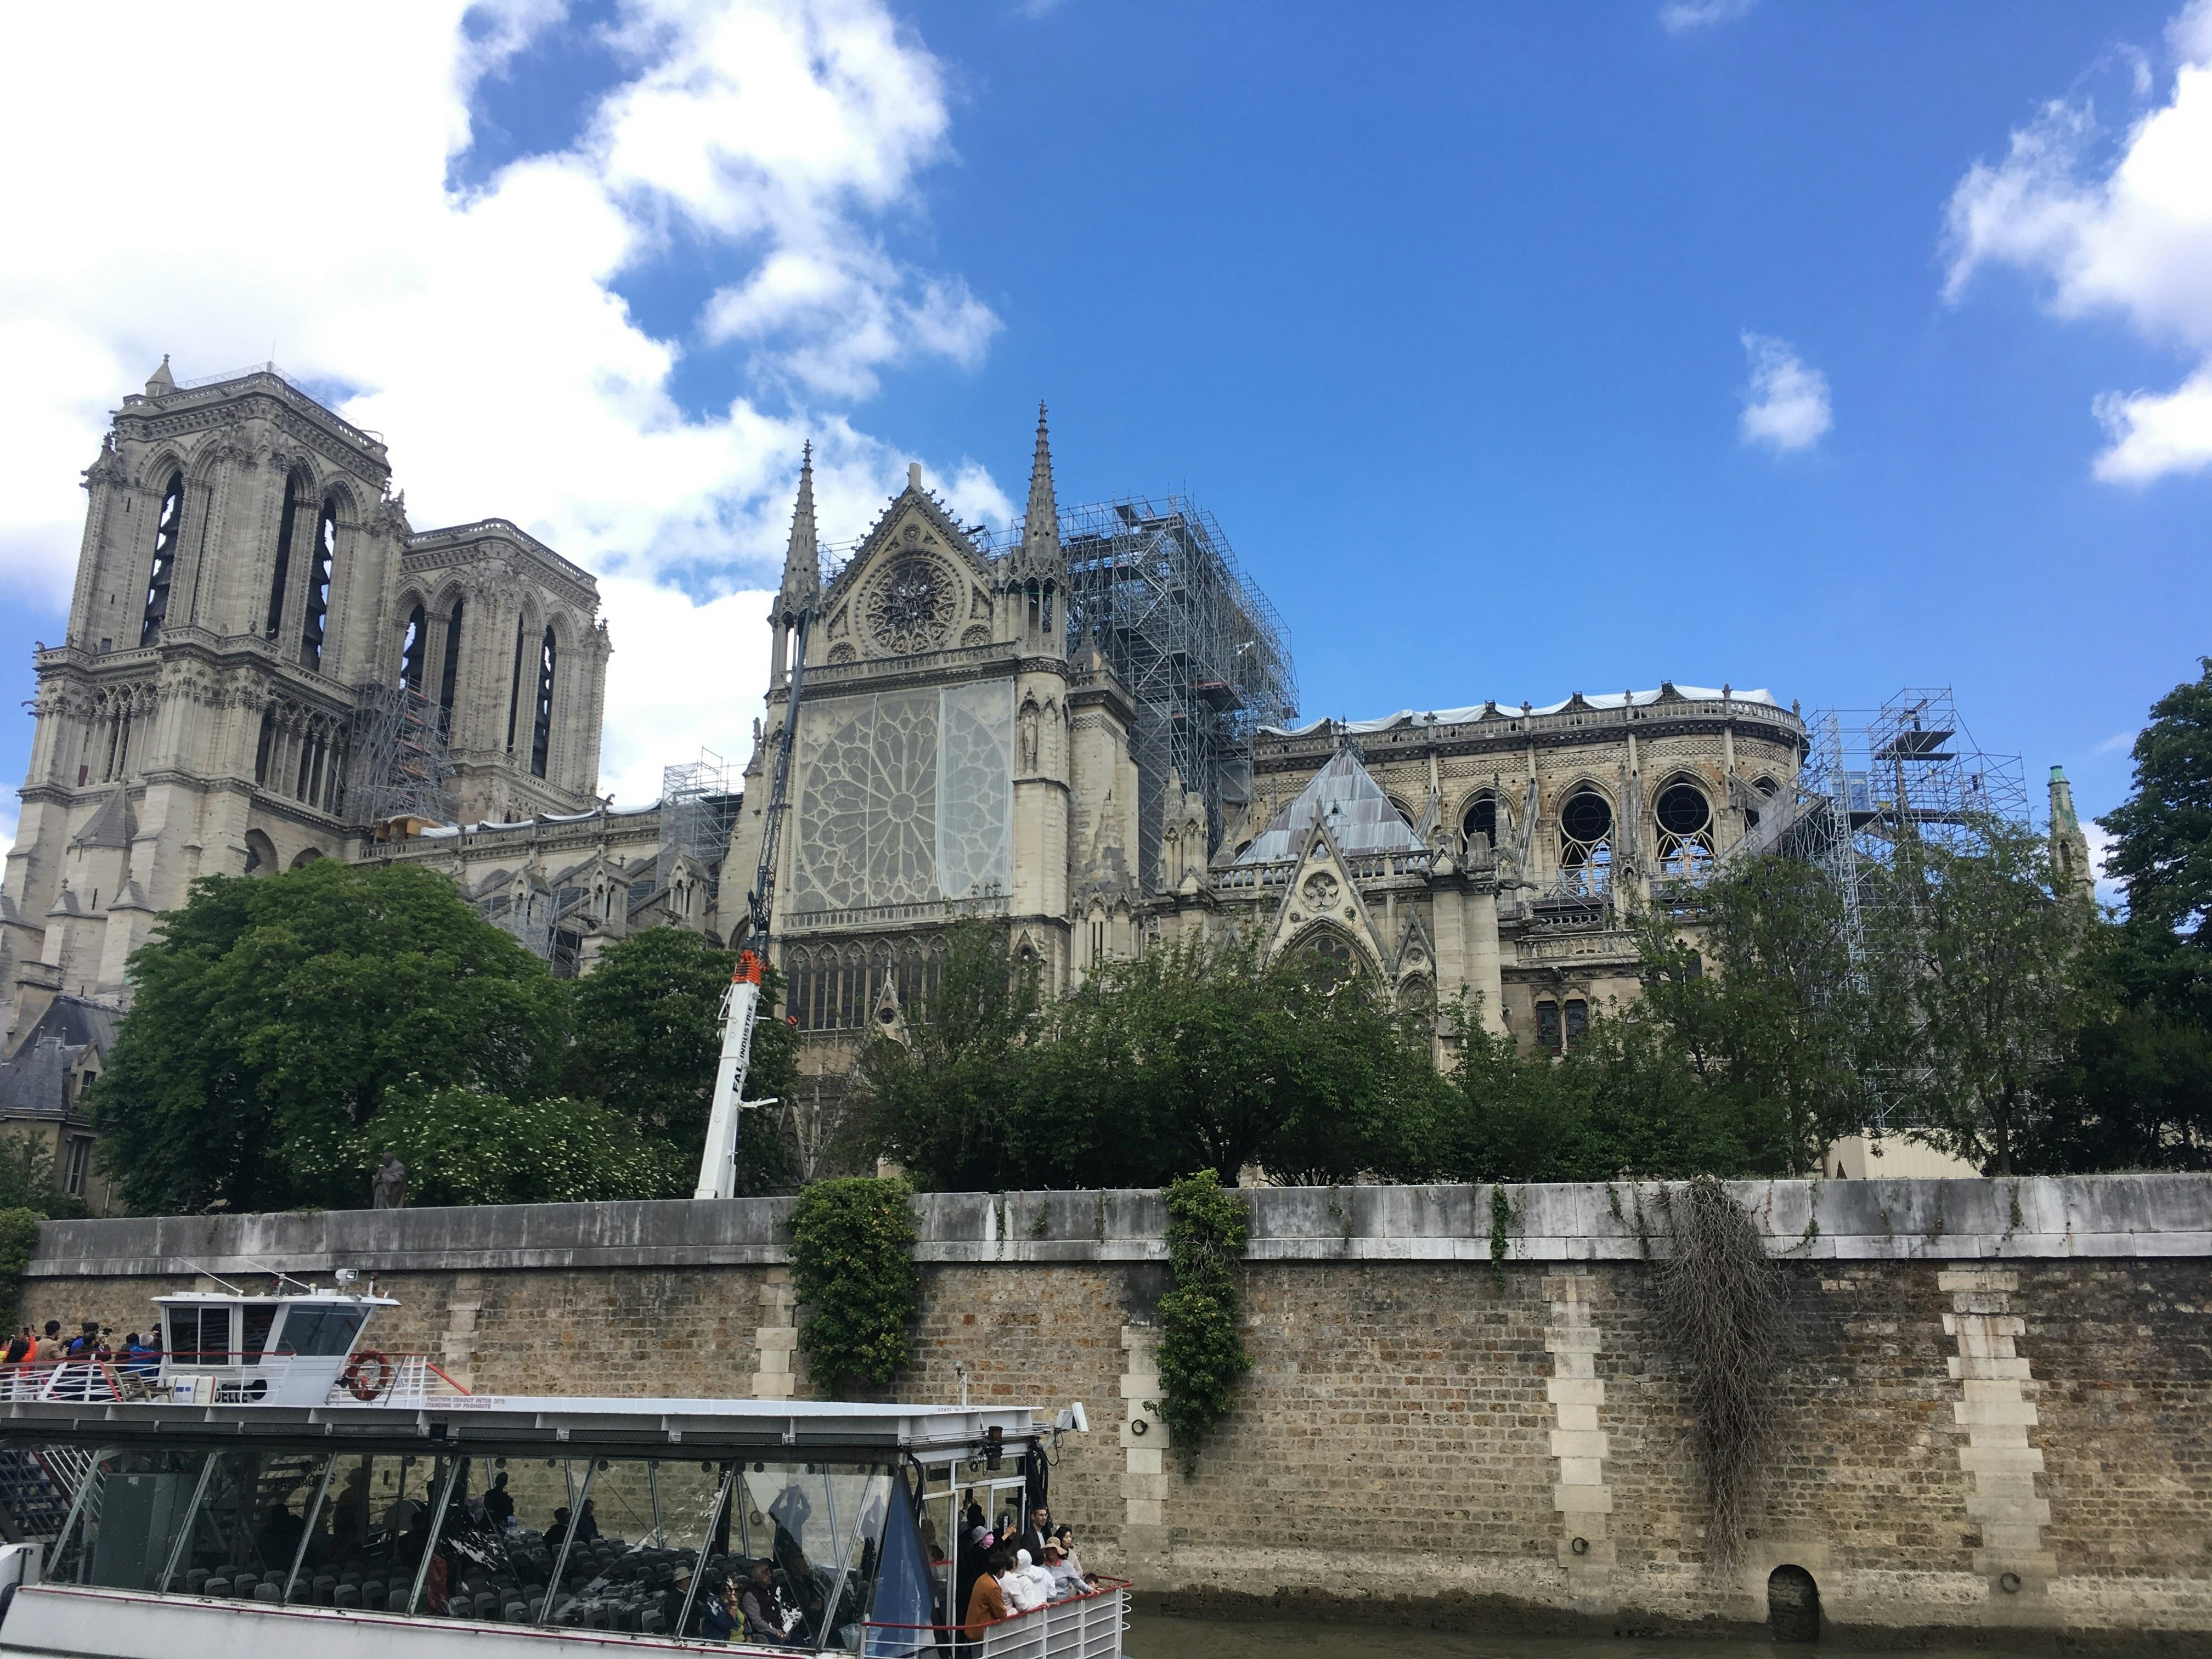 Hitte-update: Wegen, bruggen, spoor en zelfs Notre Dame krijgen opdoffer door hitte